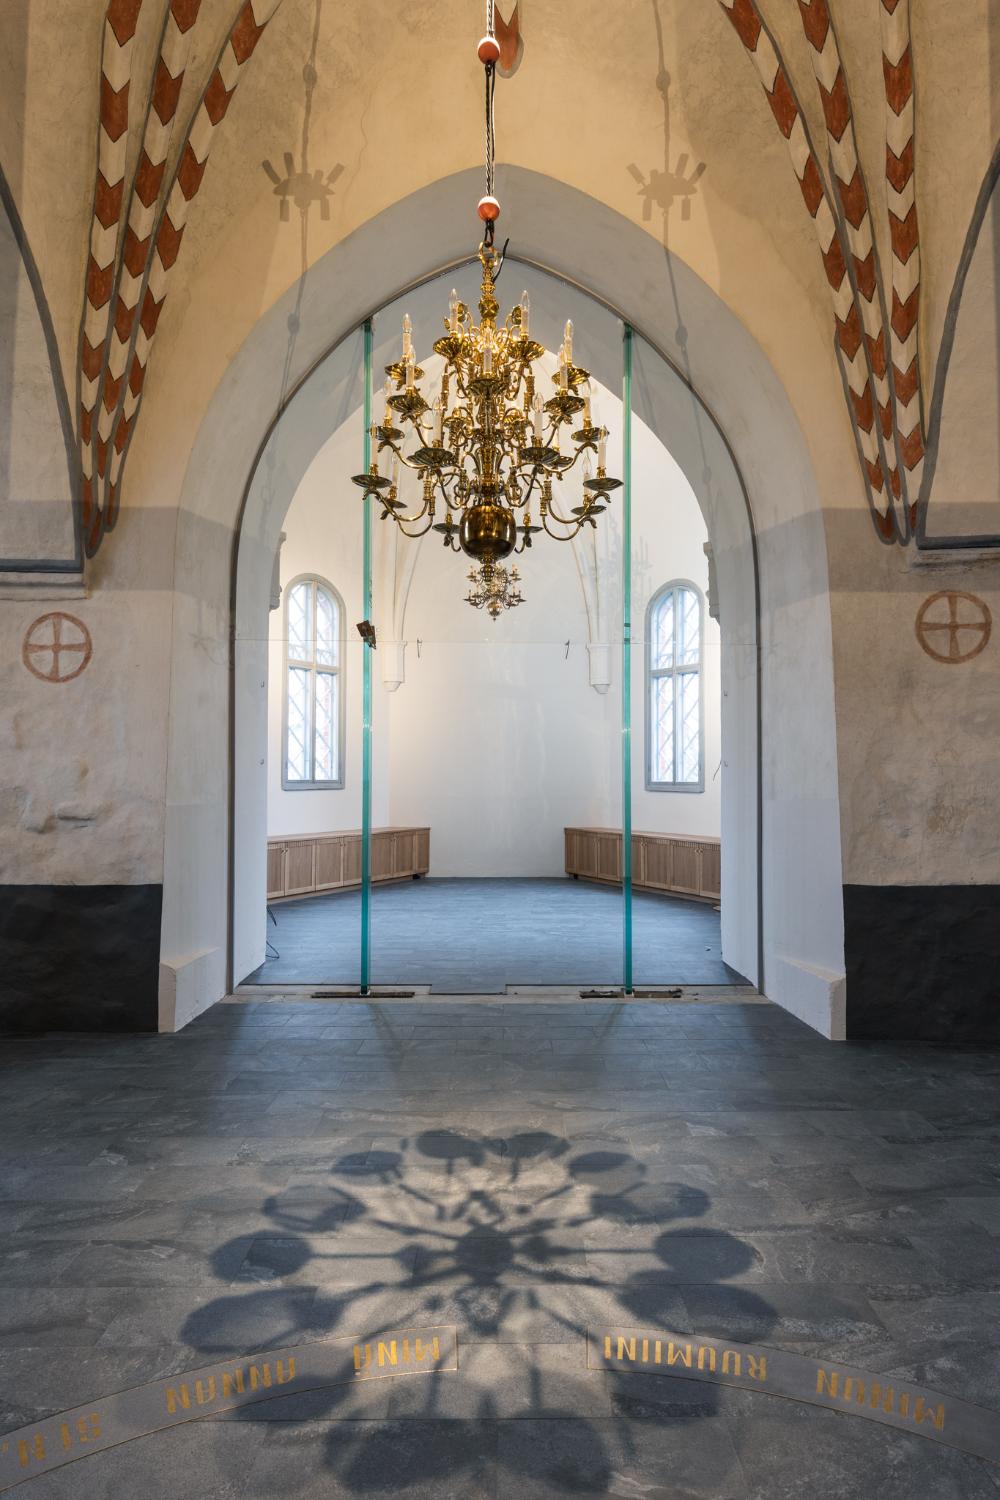 Liedon kirkon kirkkosalista näkymä pikkukirkkoon ja näiden välissä lasiovet sekä etualalla vaskikruunu.